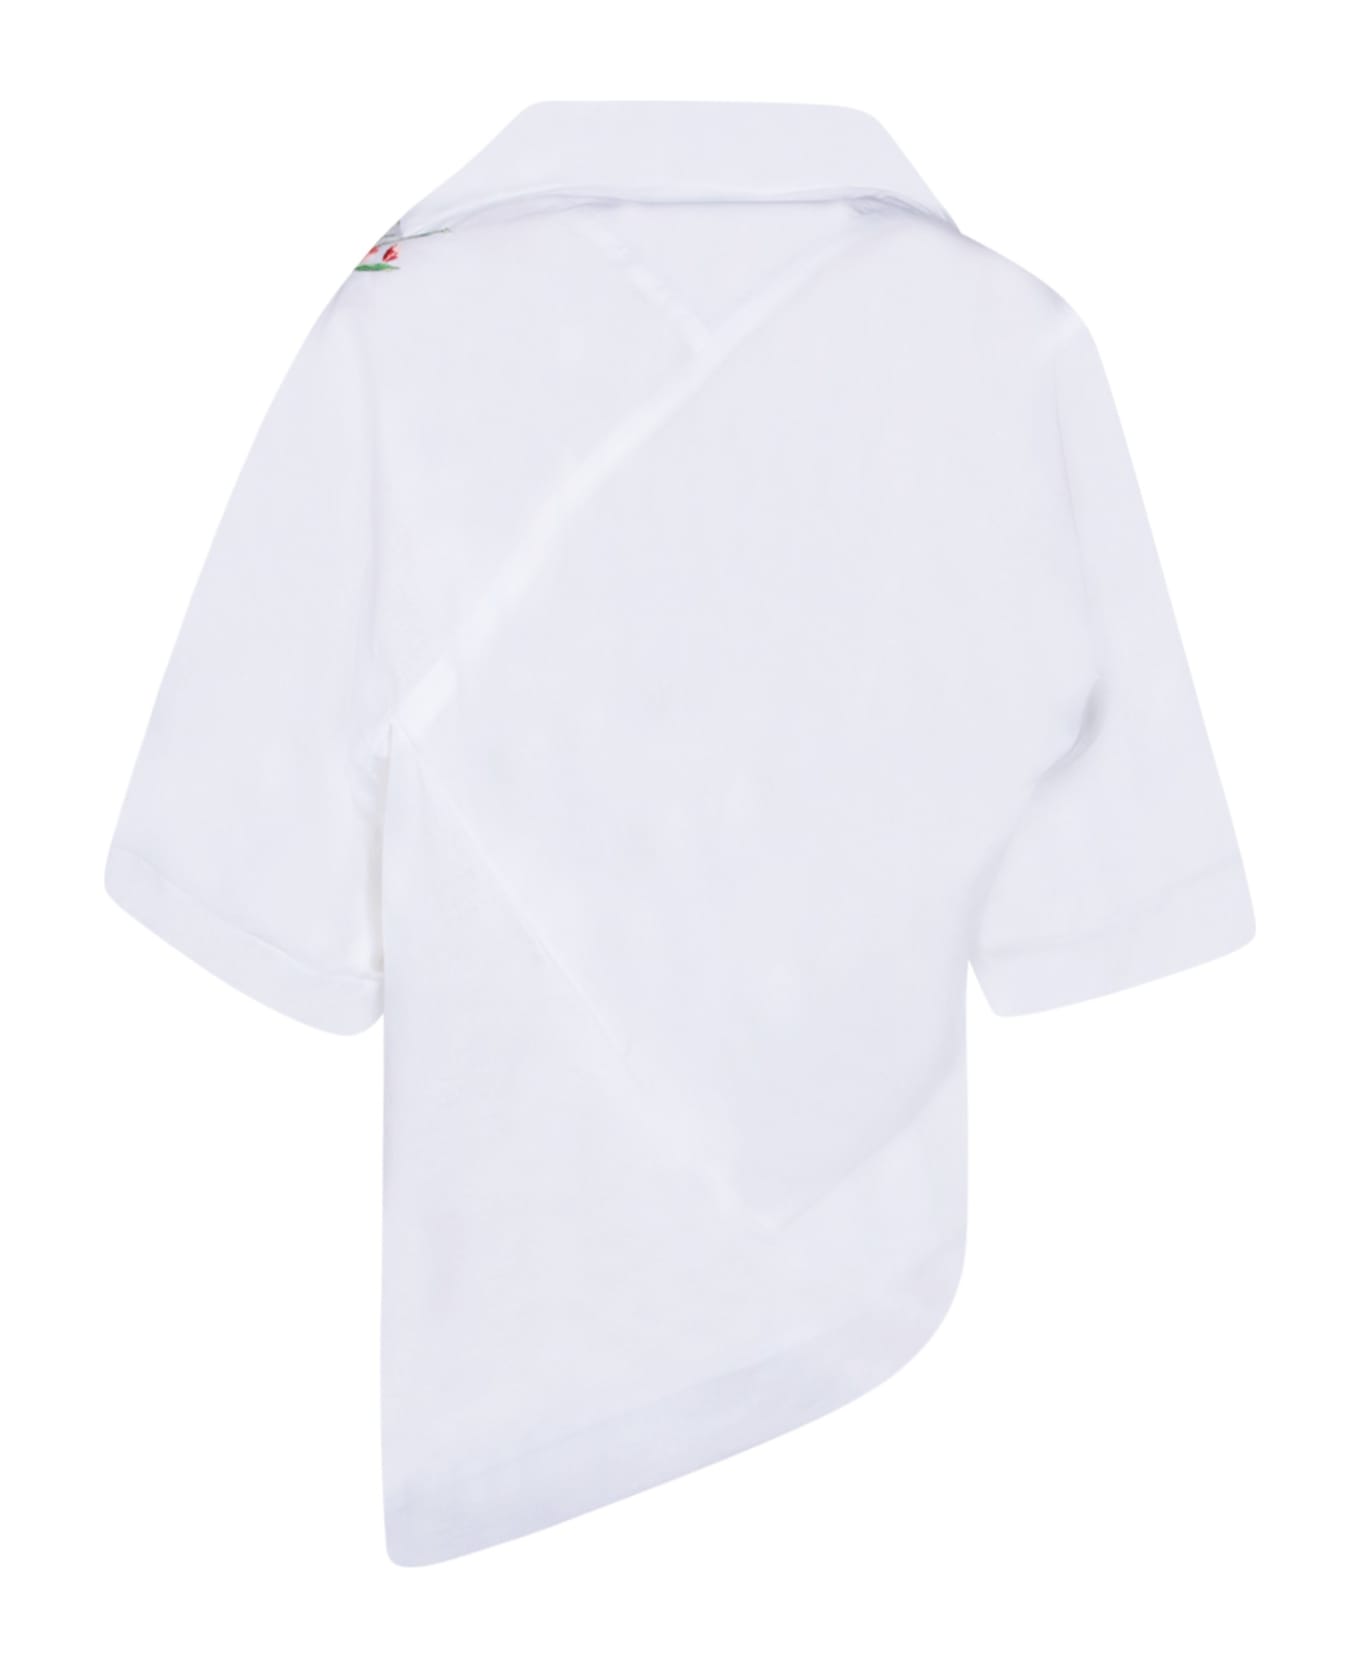 Vivienne Westwood Natalia White Shirt - White